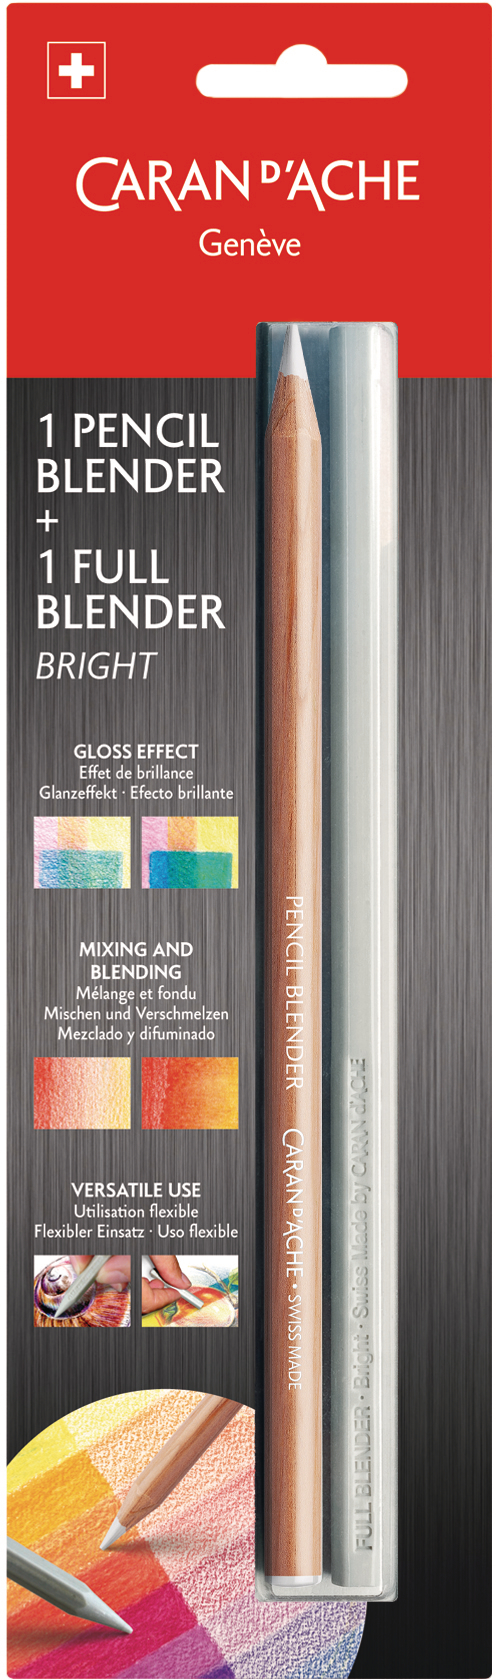 CARAN D'ACHE Pencil Blender 902.301 incl. Full Blender